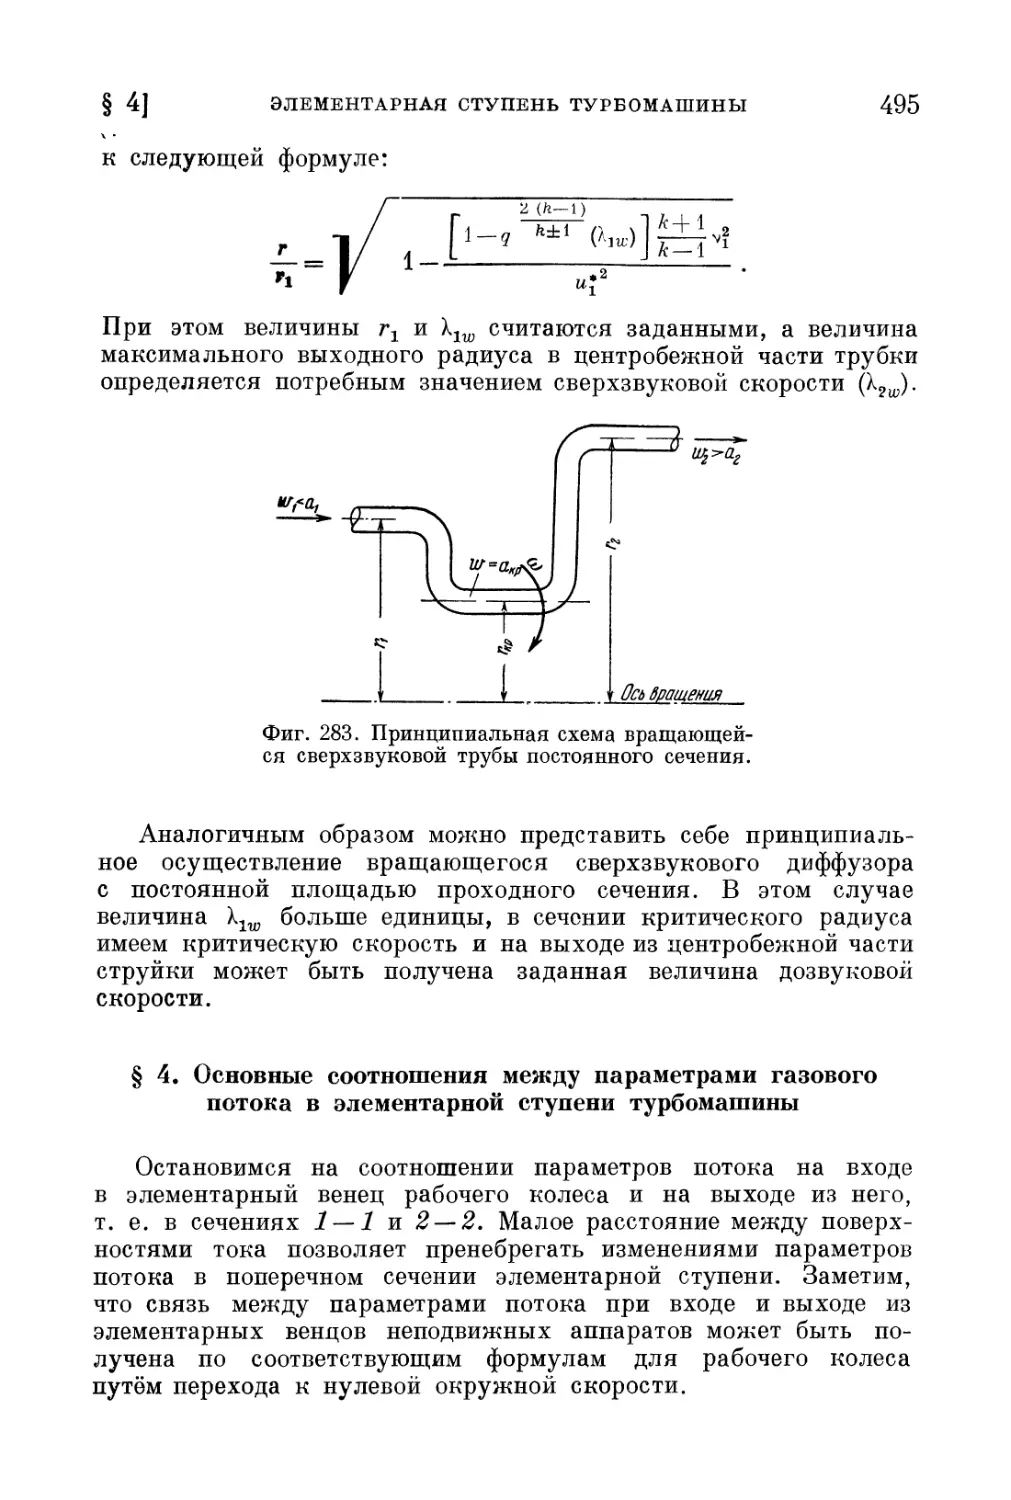 § 4. Основные соотношения между параметрами газового потока в элементарной ступени турбомашины